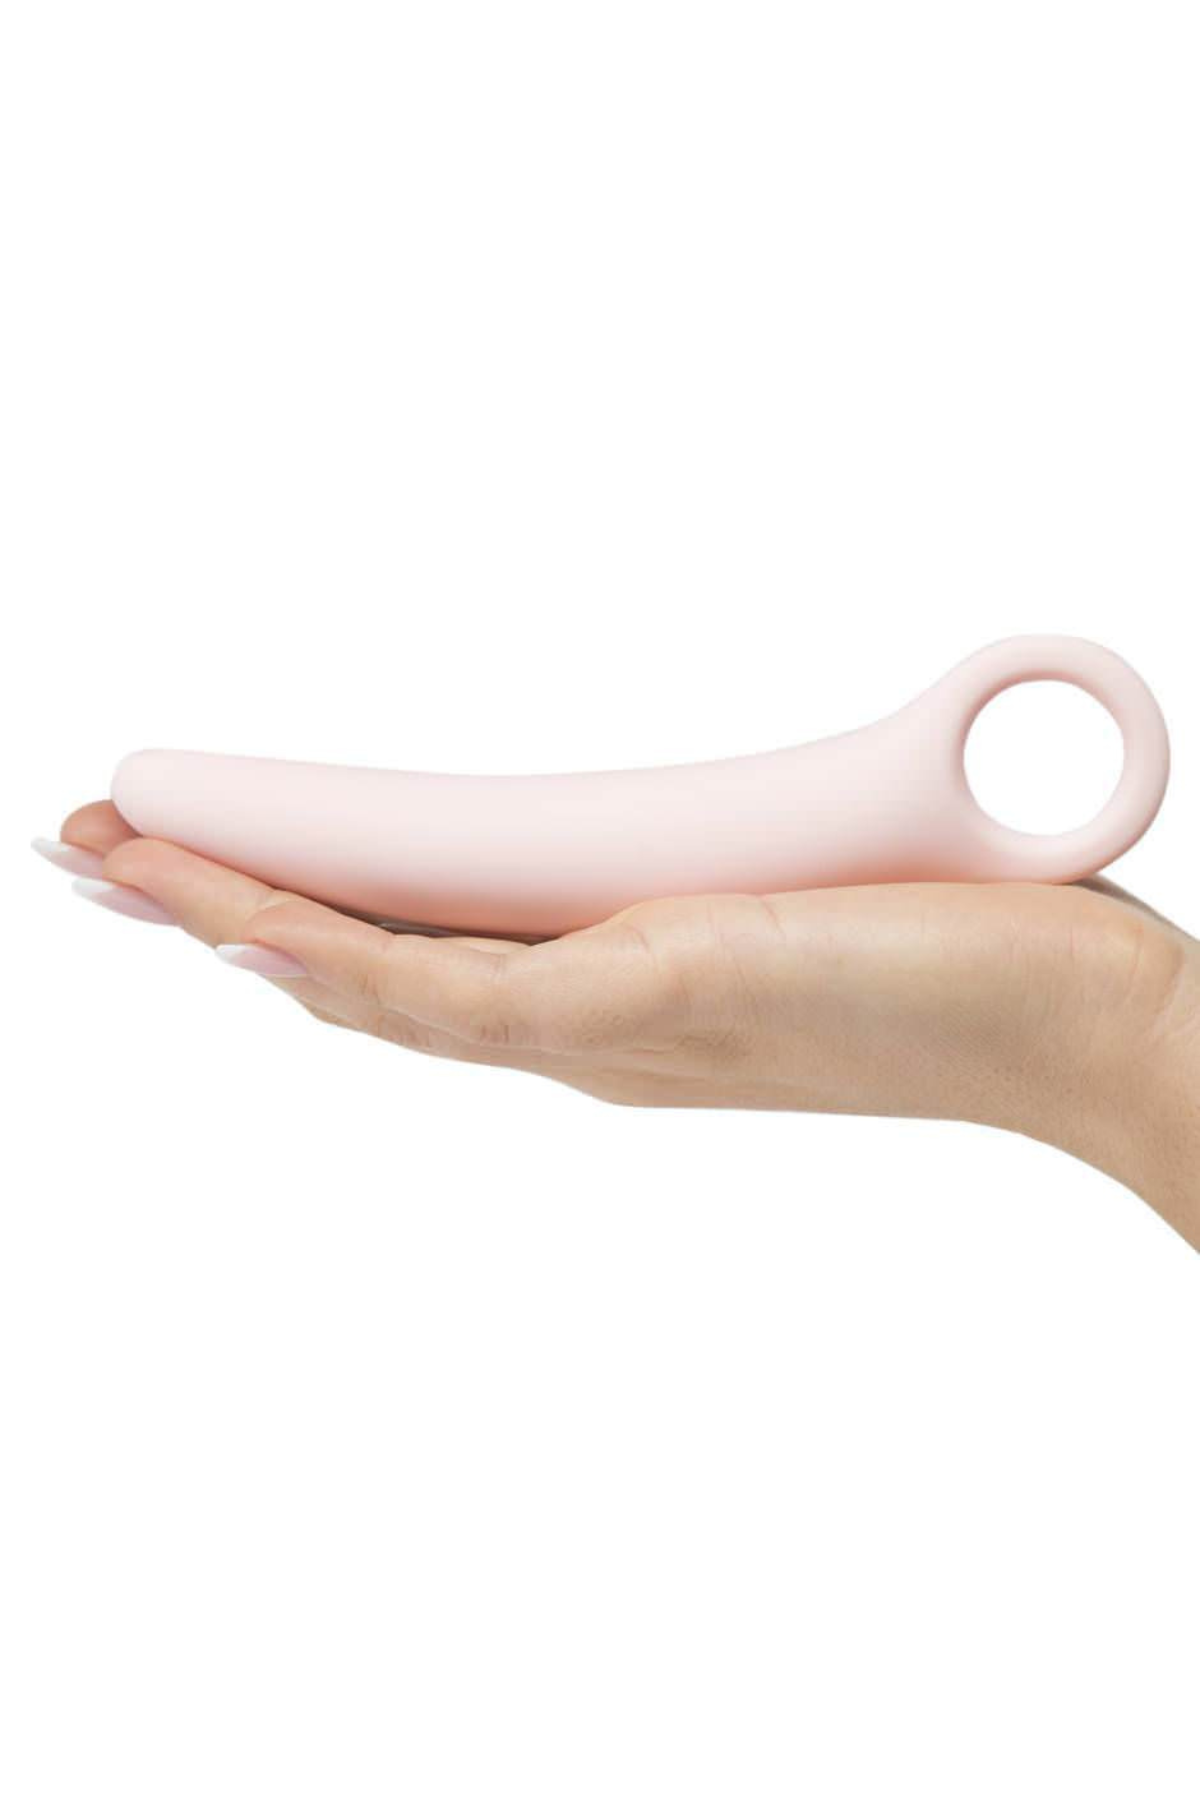 2PC Vaginal Dilator Kit